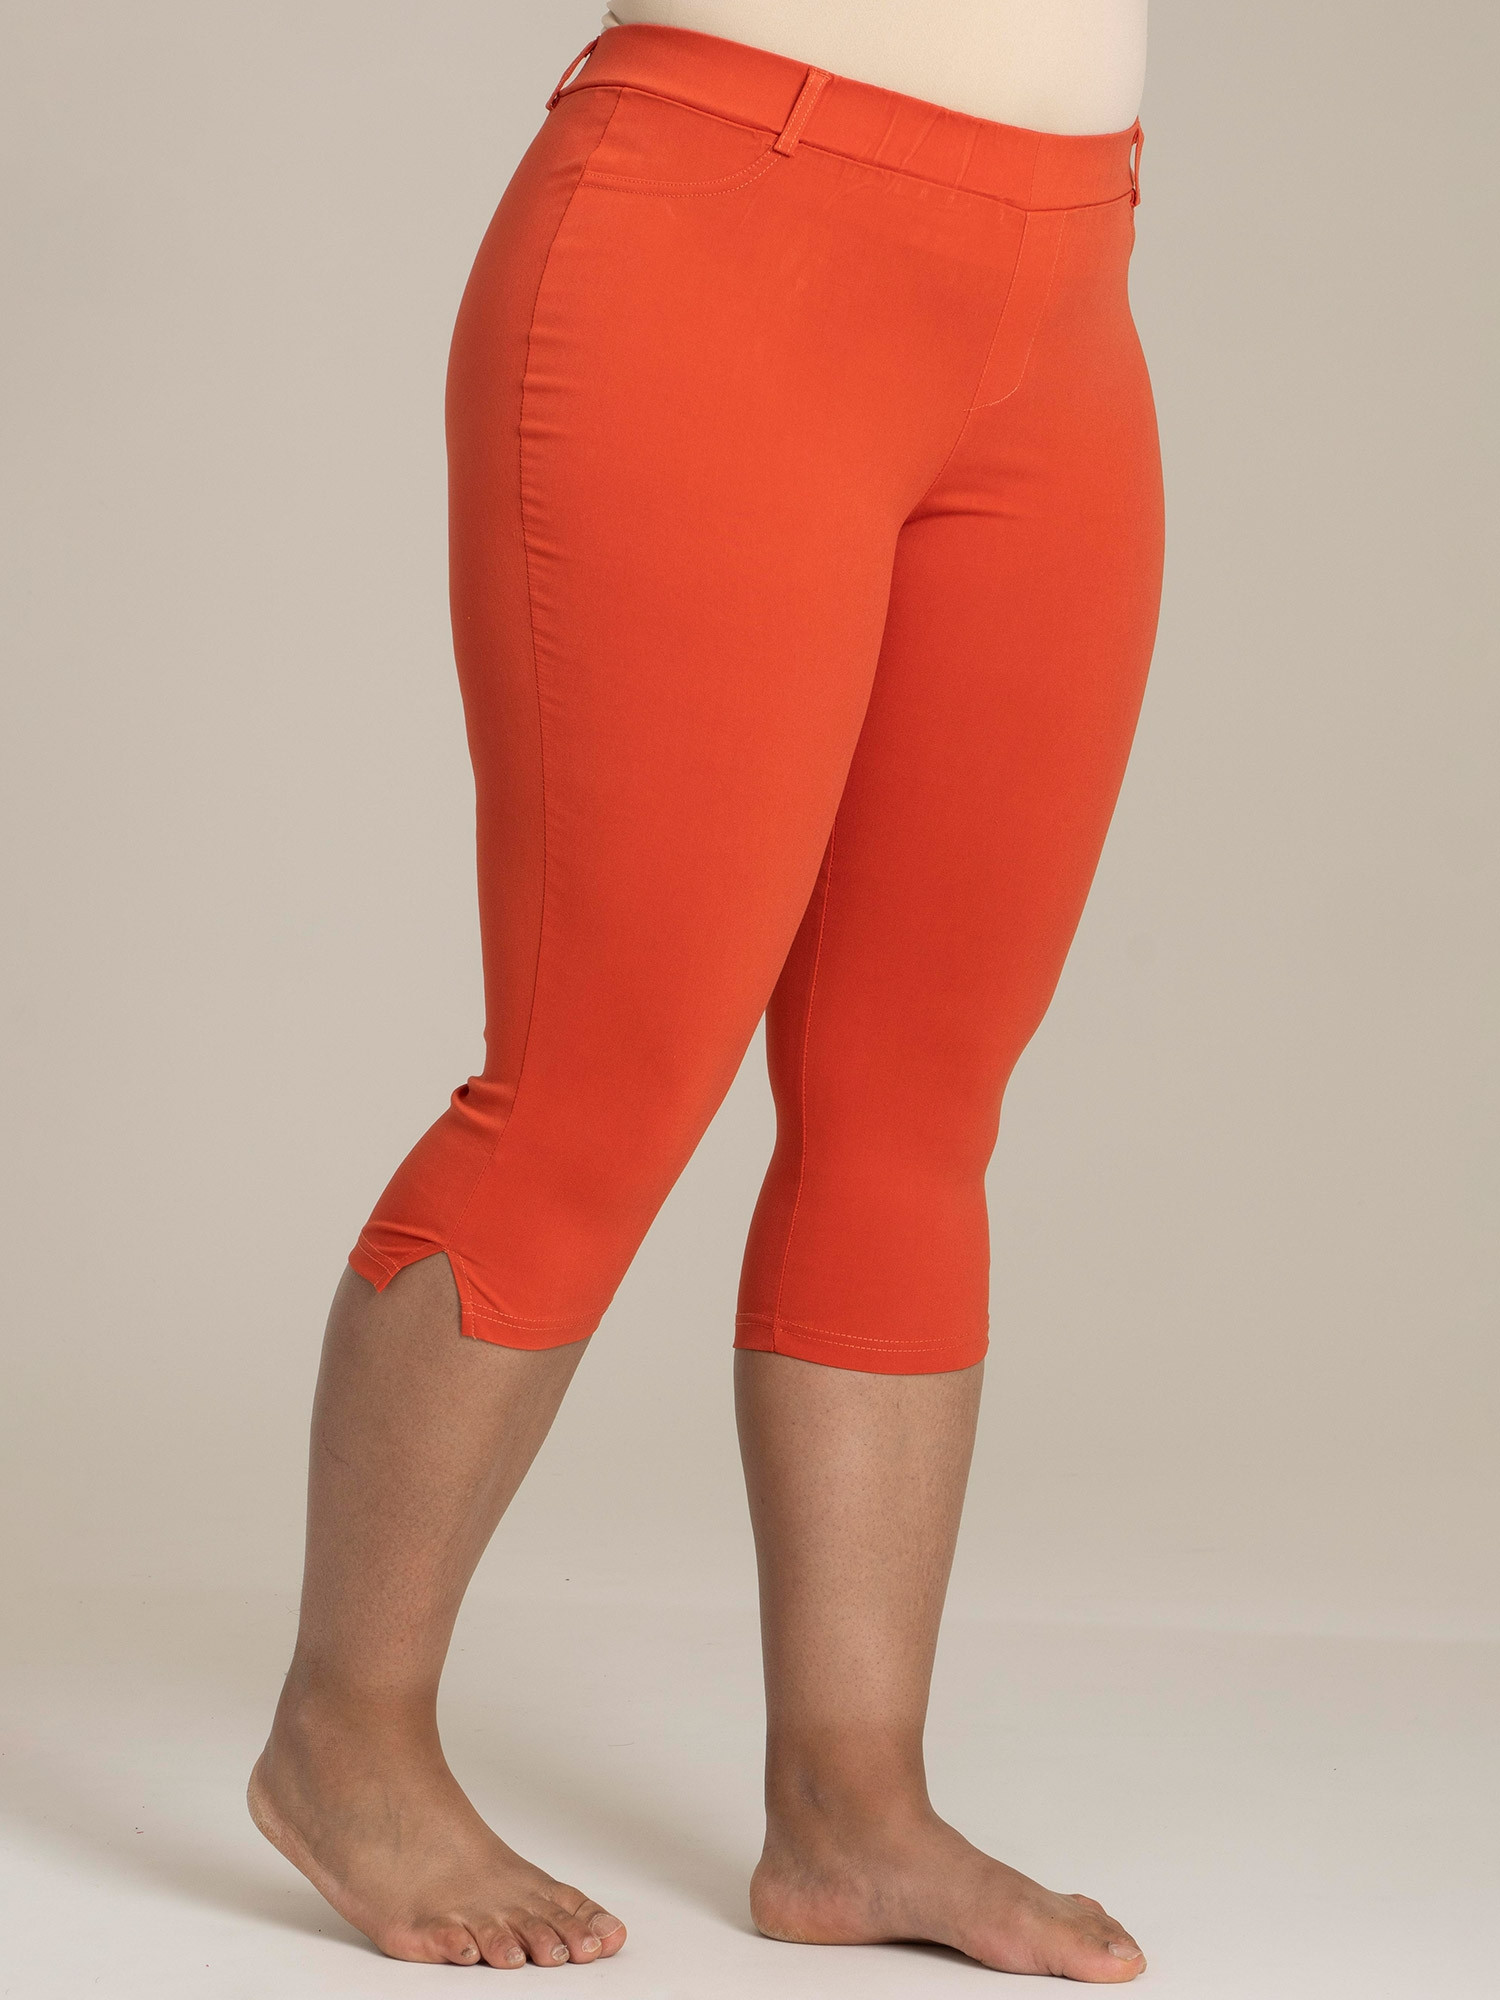 Orange capri leggings